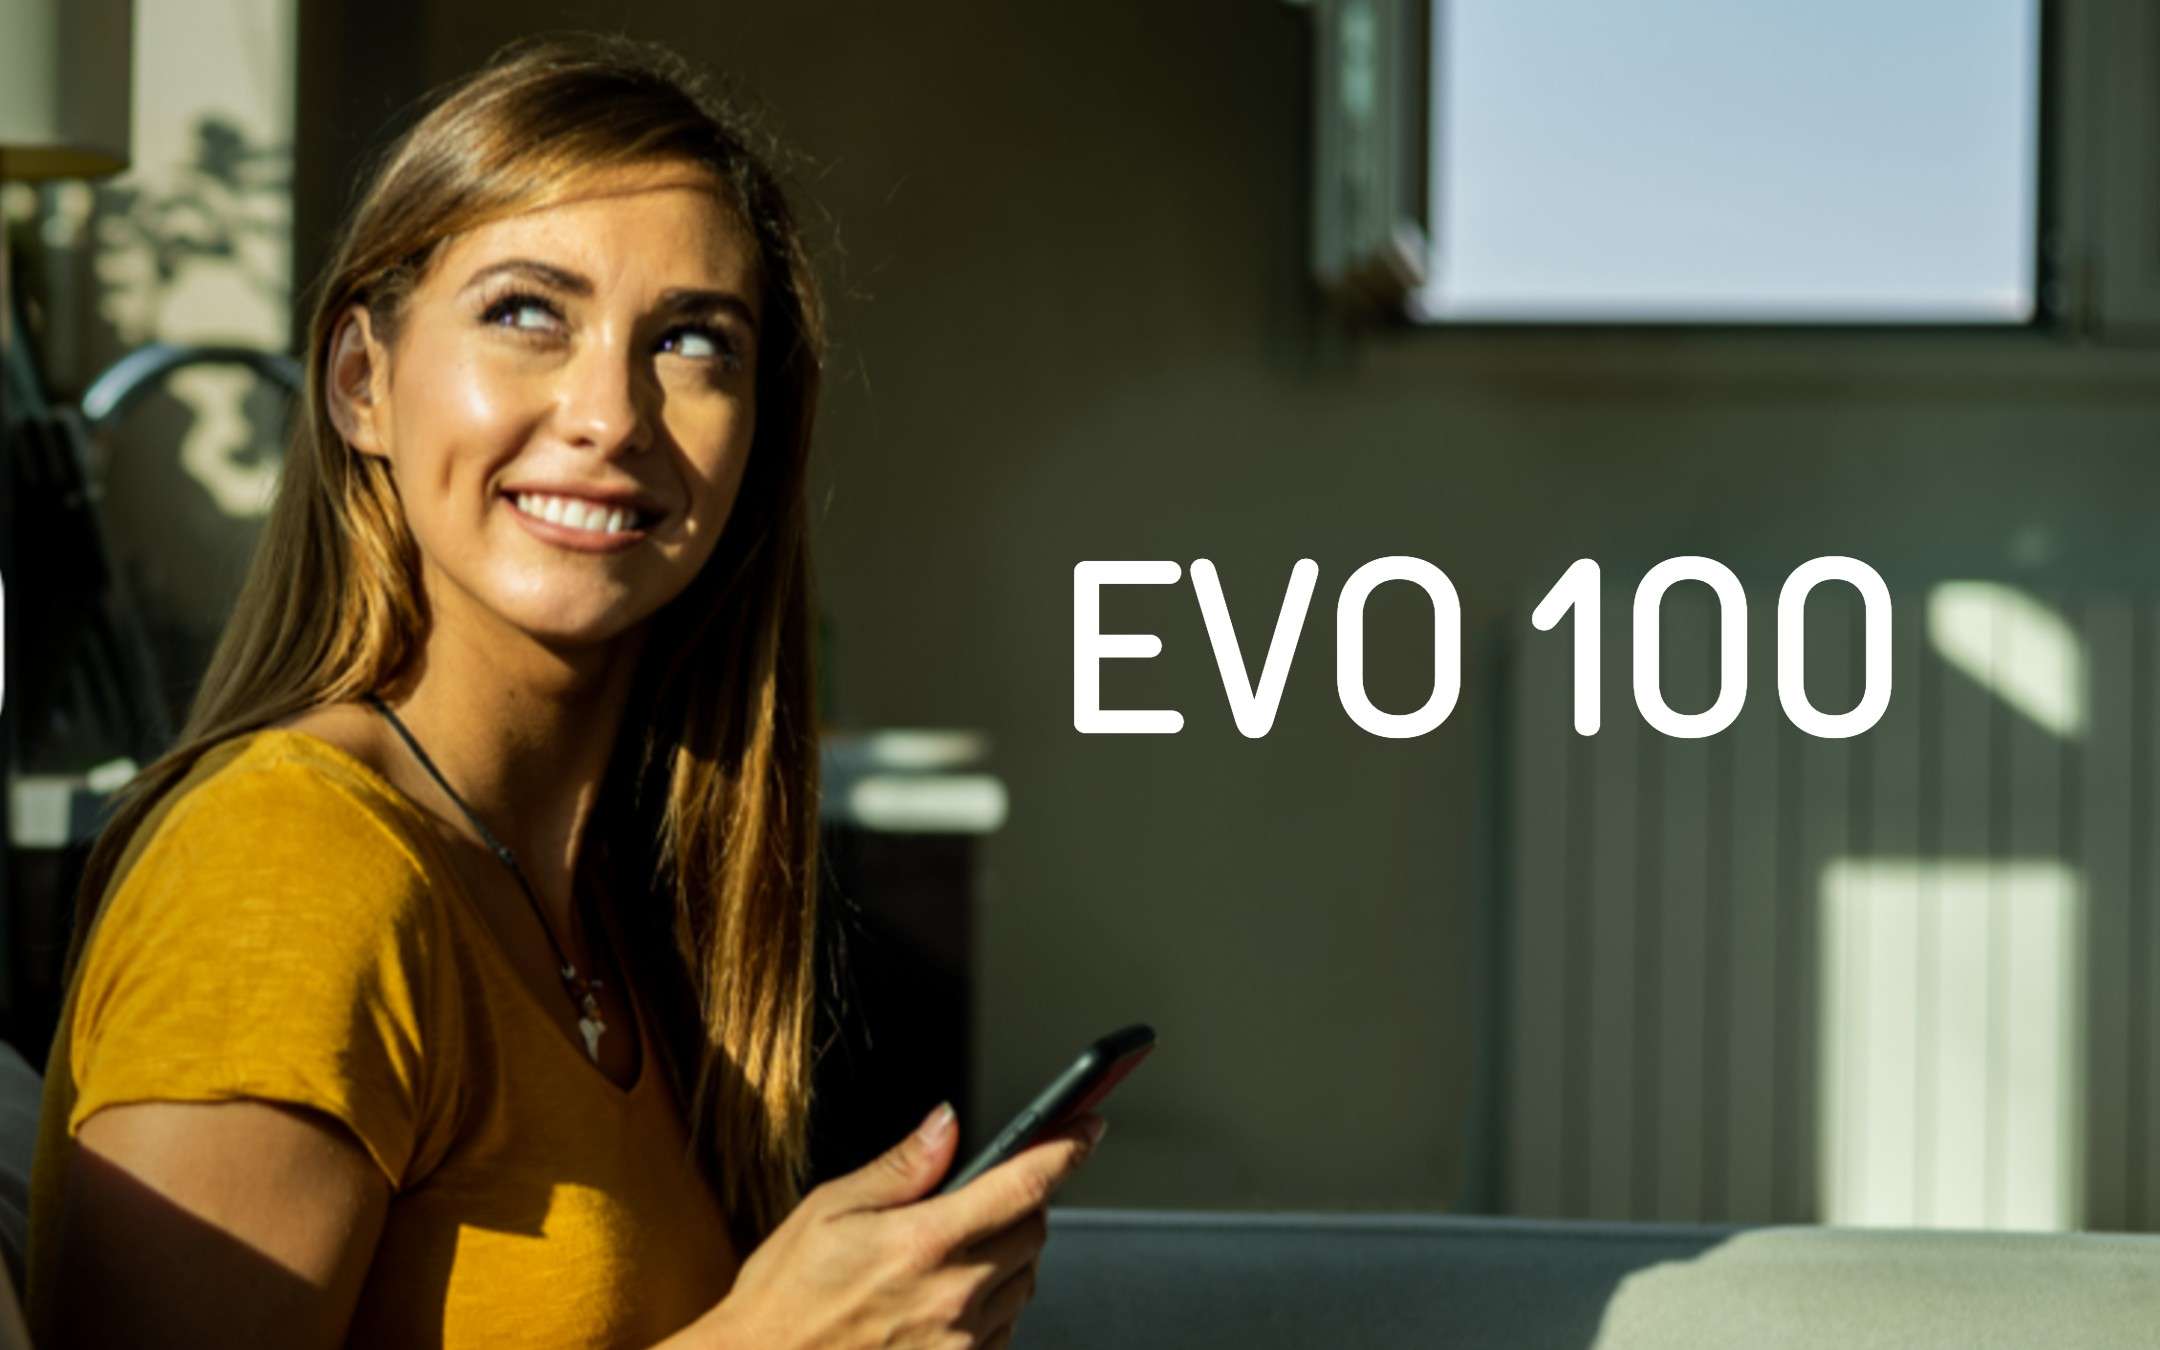 EVO 100: Promo Coop Voce con 100GB a 8,99€